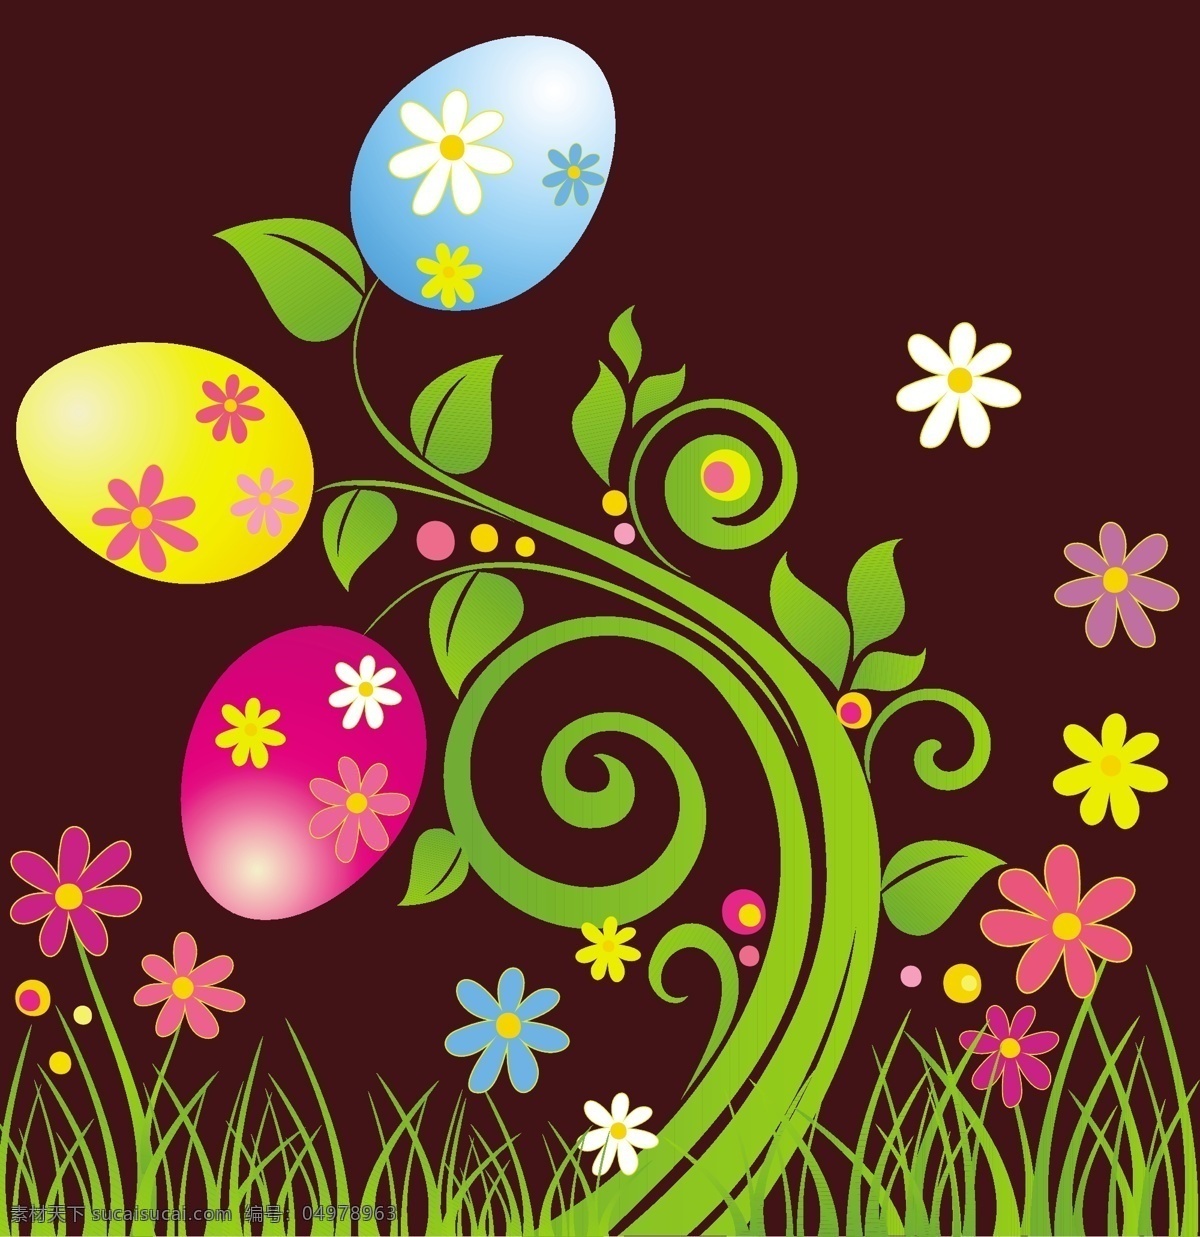 矢量 炫彩 复活节 花朵 背景 彩蛋 花纹 可爱 闪光 矢量素材 西方节日 节日素材 其他节日